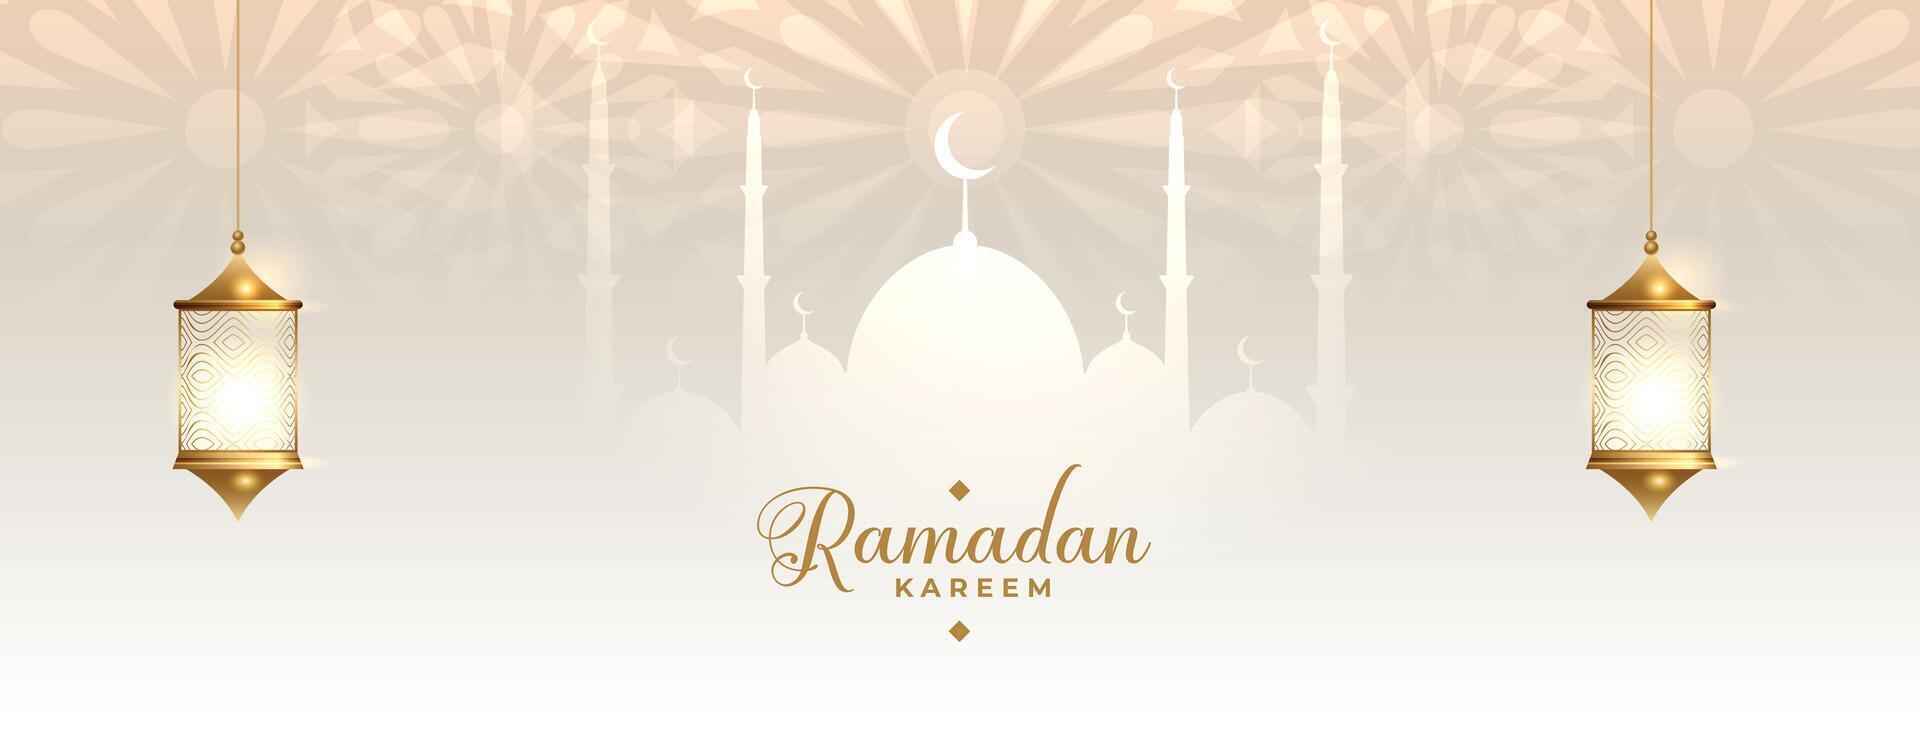 Ramadan kareem traditionell islamisch Banner Design vektor